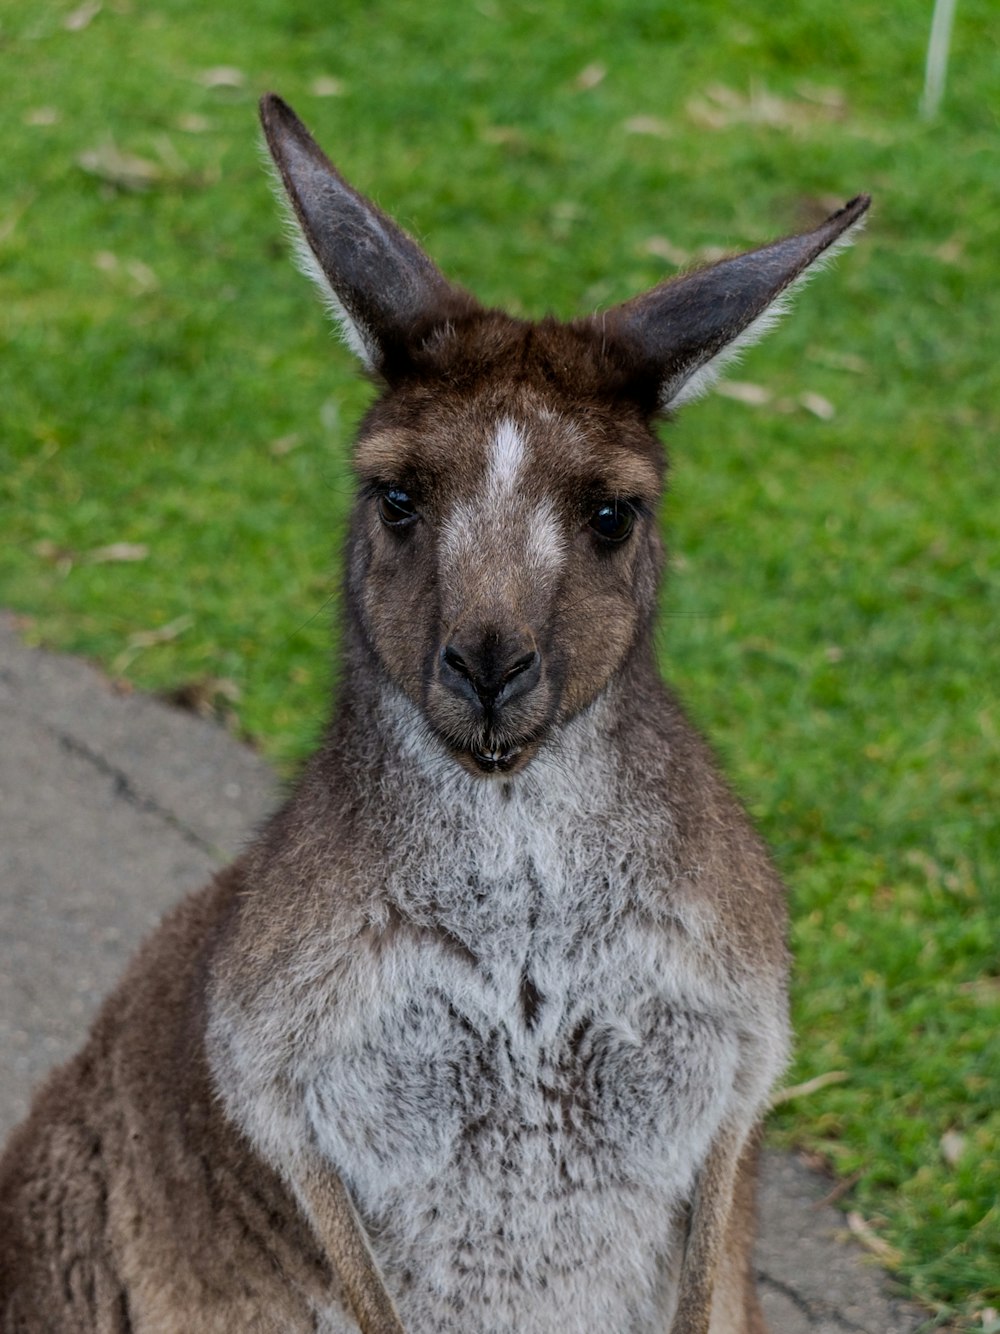 a close up of a kangaroo on a sidewalk